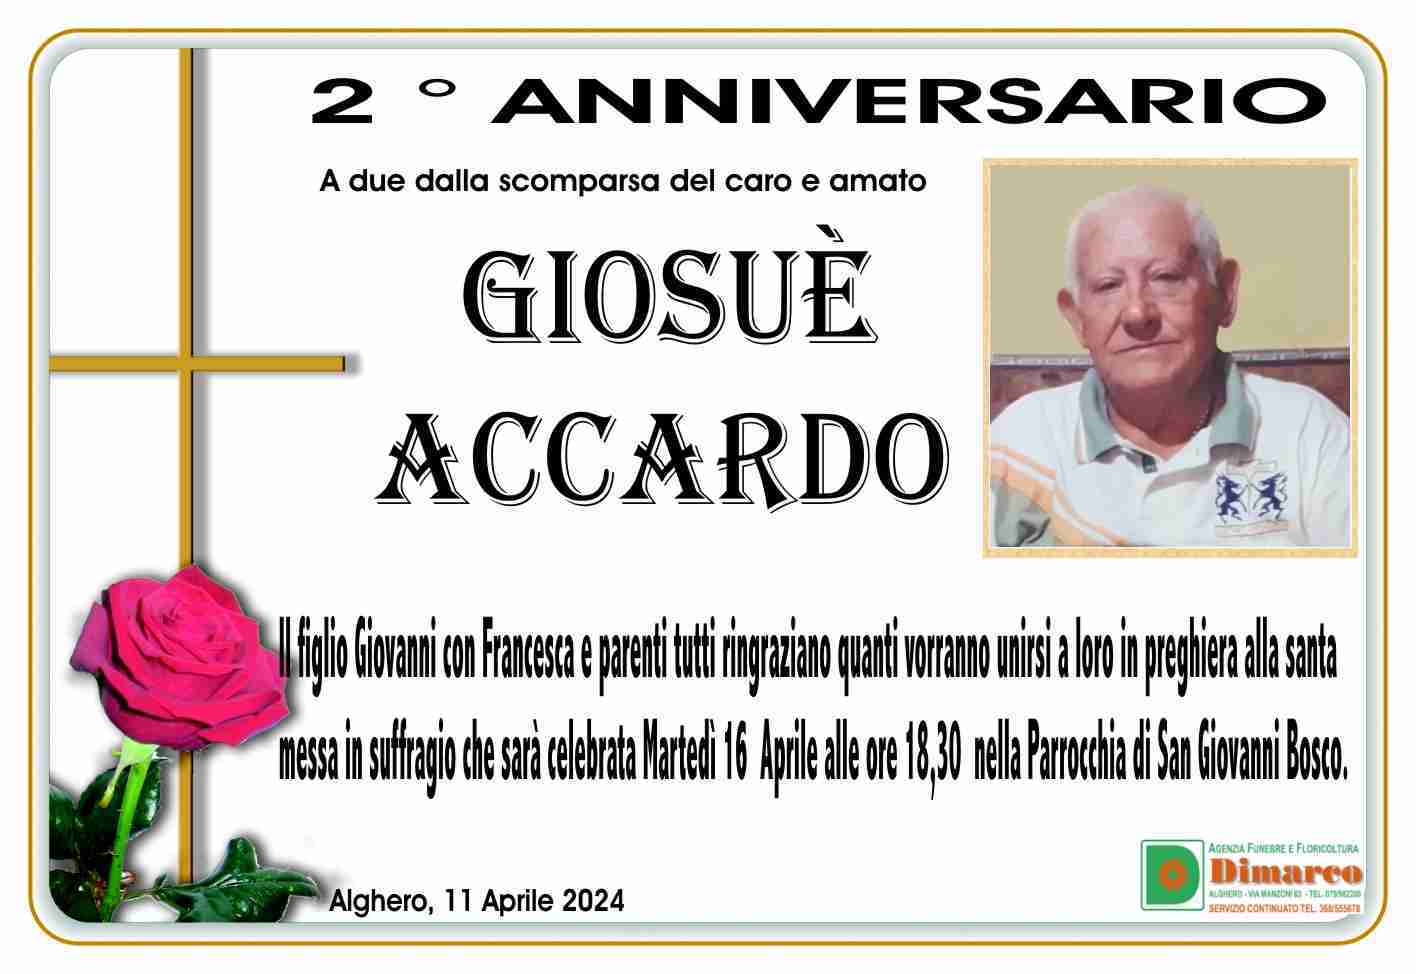 Giosuè Accardo